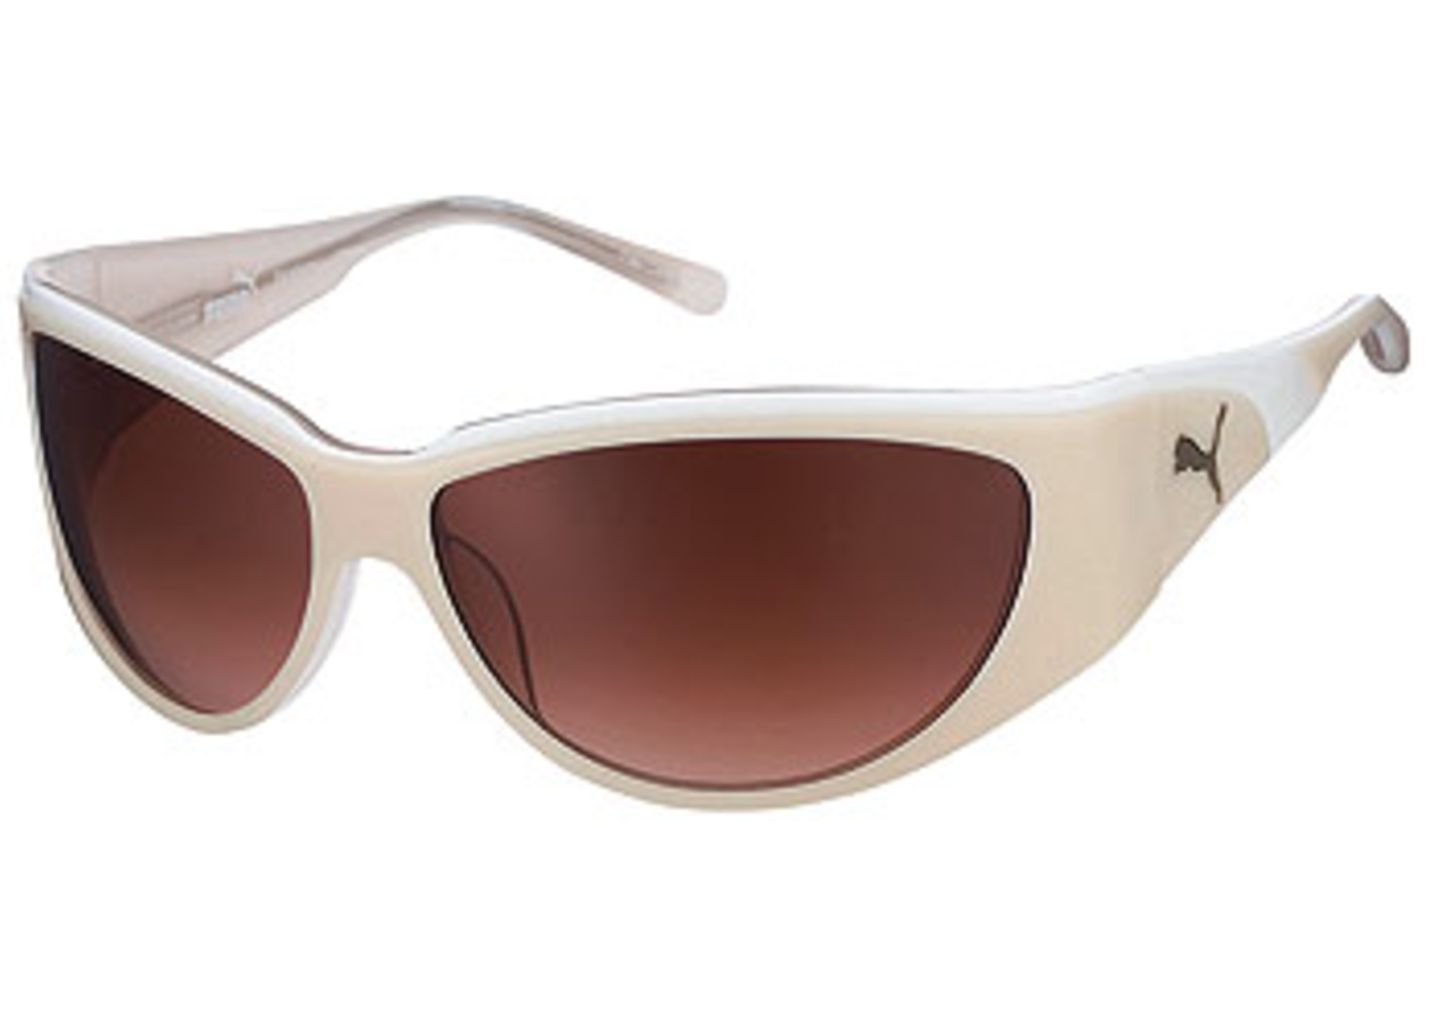 Sportliche Brille mit weißer Kunststofffassung und braunen Gläsern; 119,00 Euro; von Puma